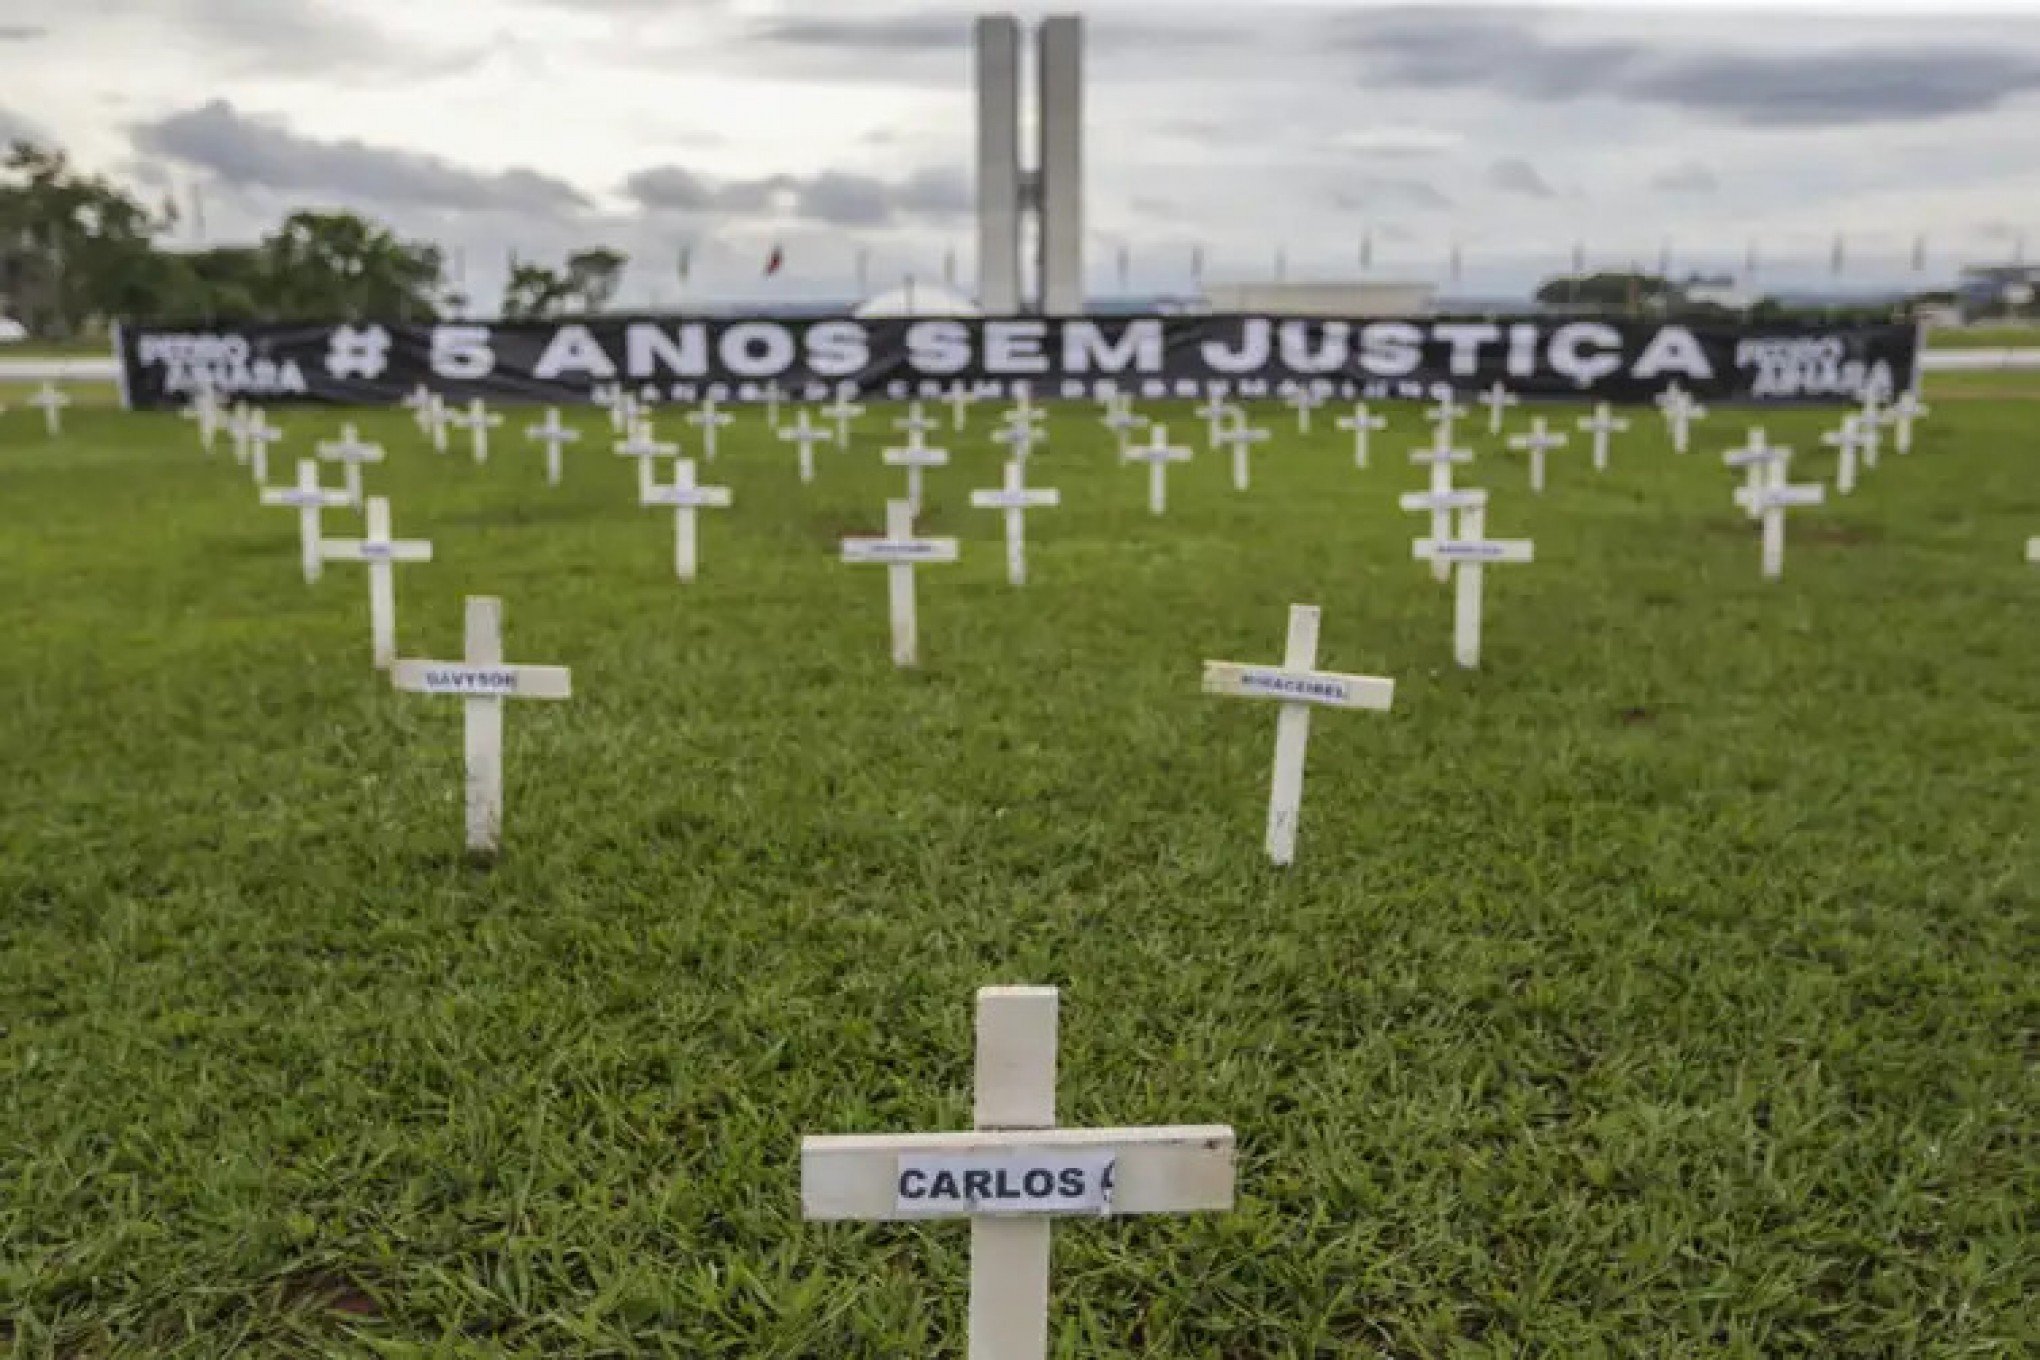 Cinco anos depois, cruzes na Esplanada dos Ministérios lembram tragédia de Brumadinho